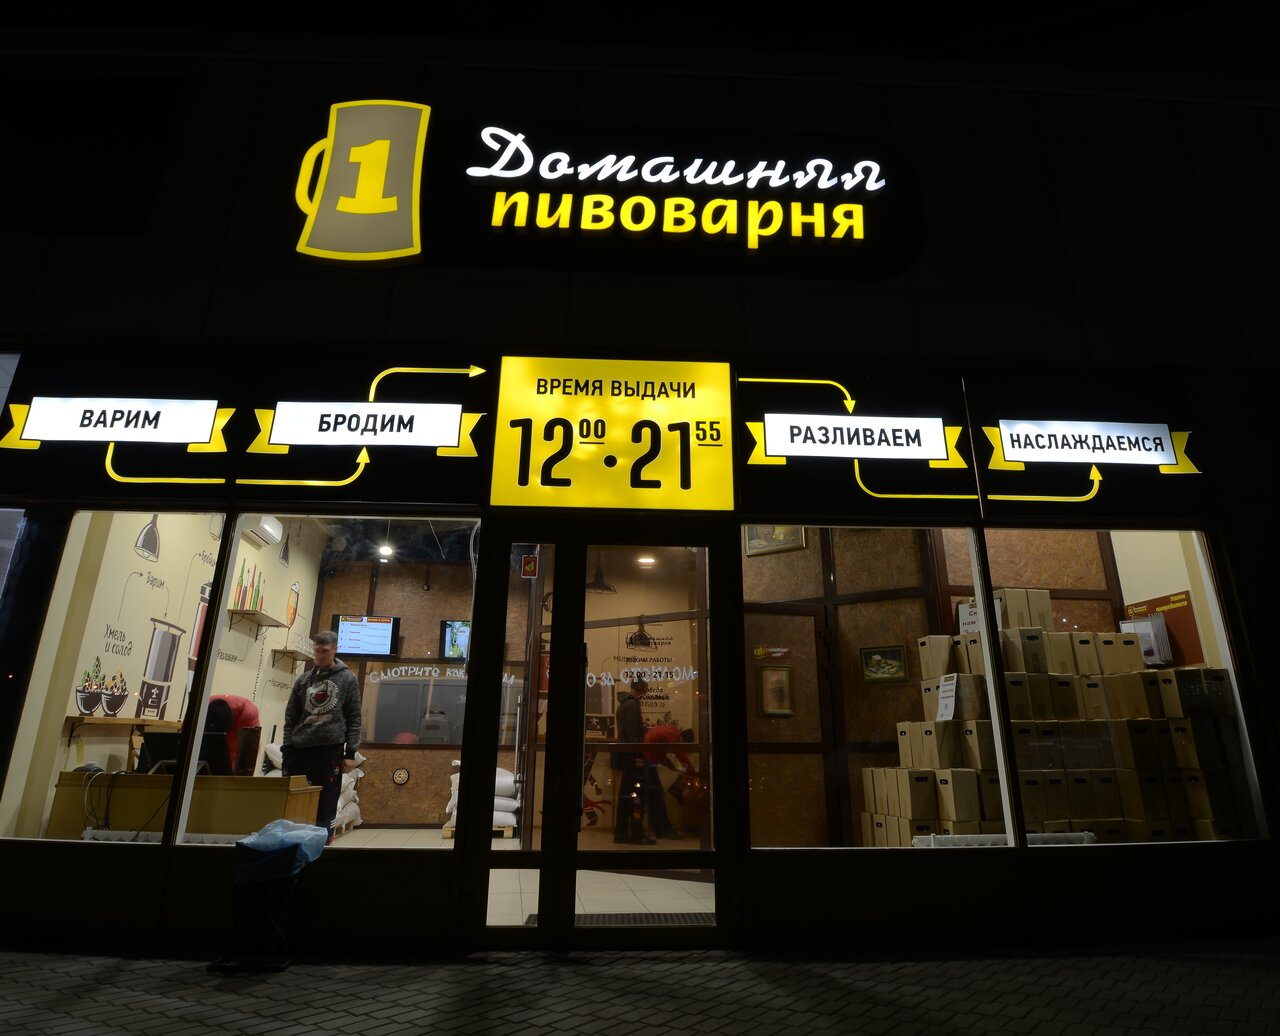 В Омске закрывается популярная пивоварня #Новости #Общество #Омск